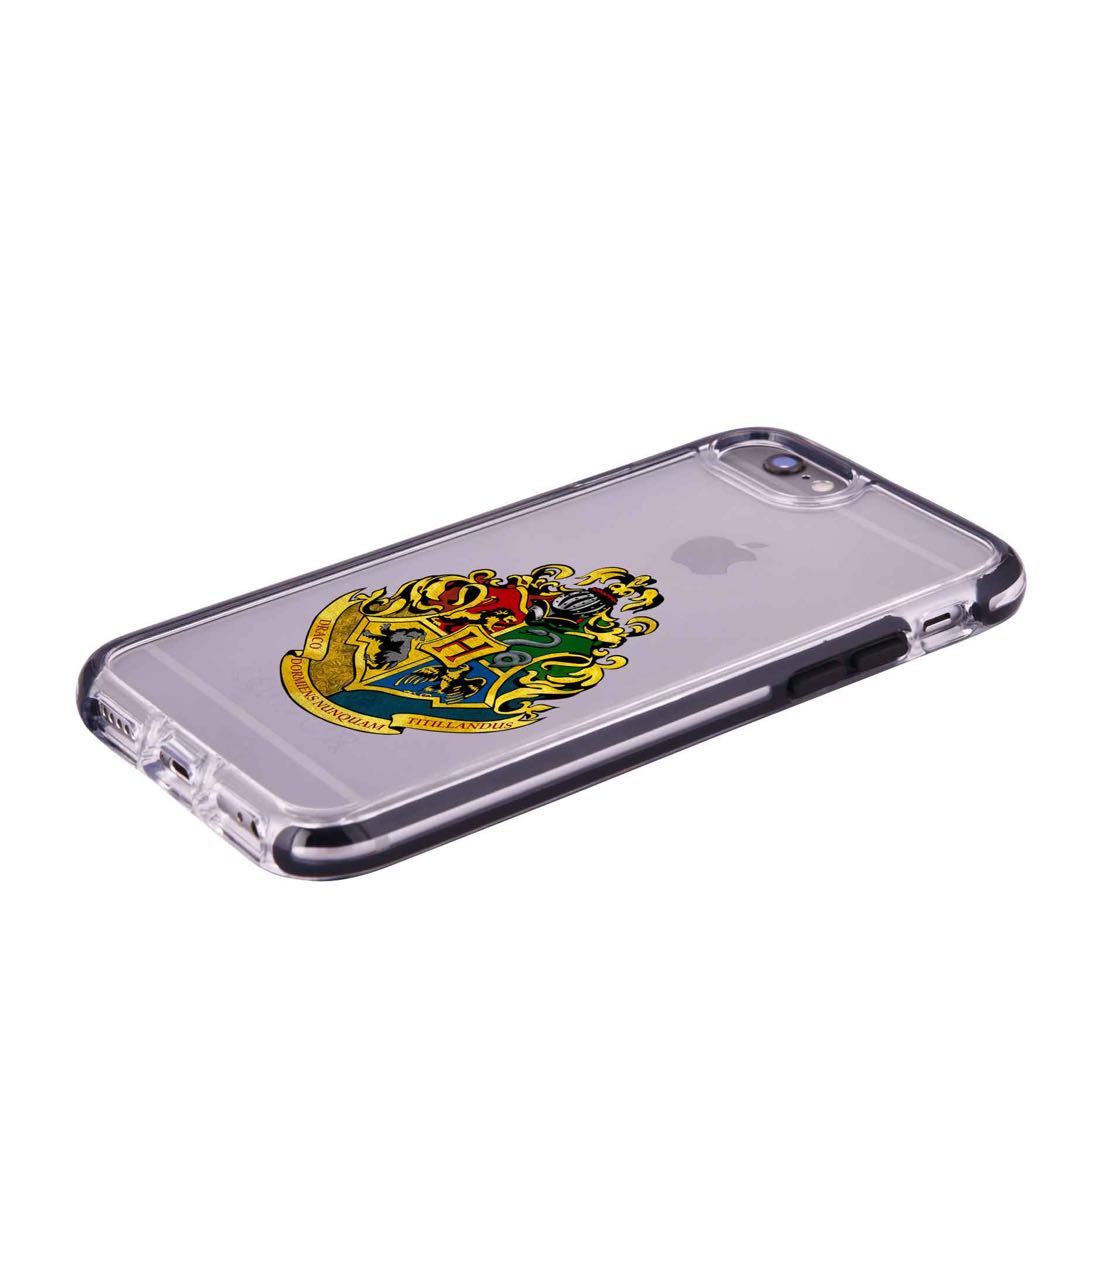 Hogwarts Sigil - Extreme Phone Case for iPhone 6S